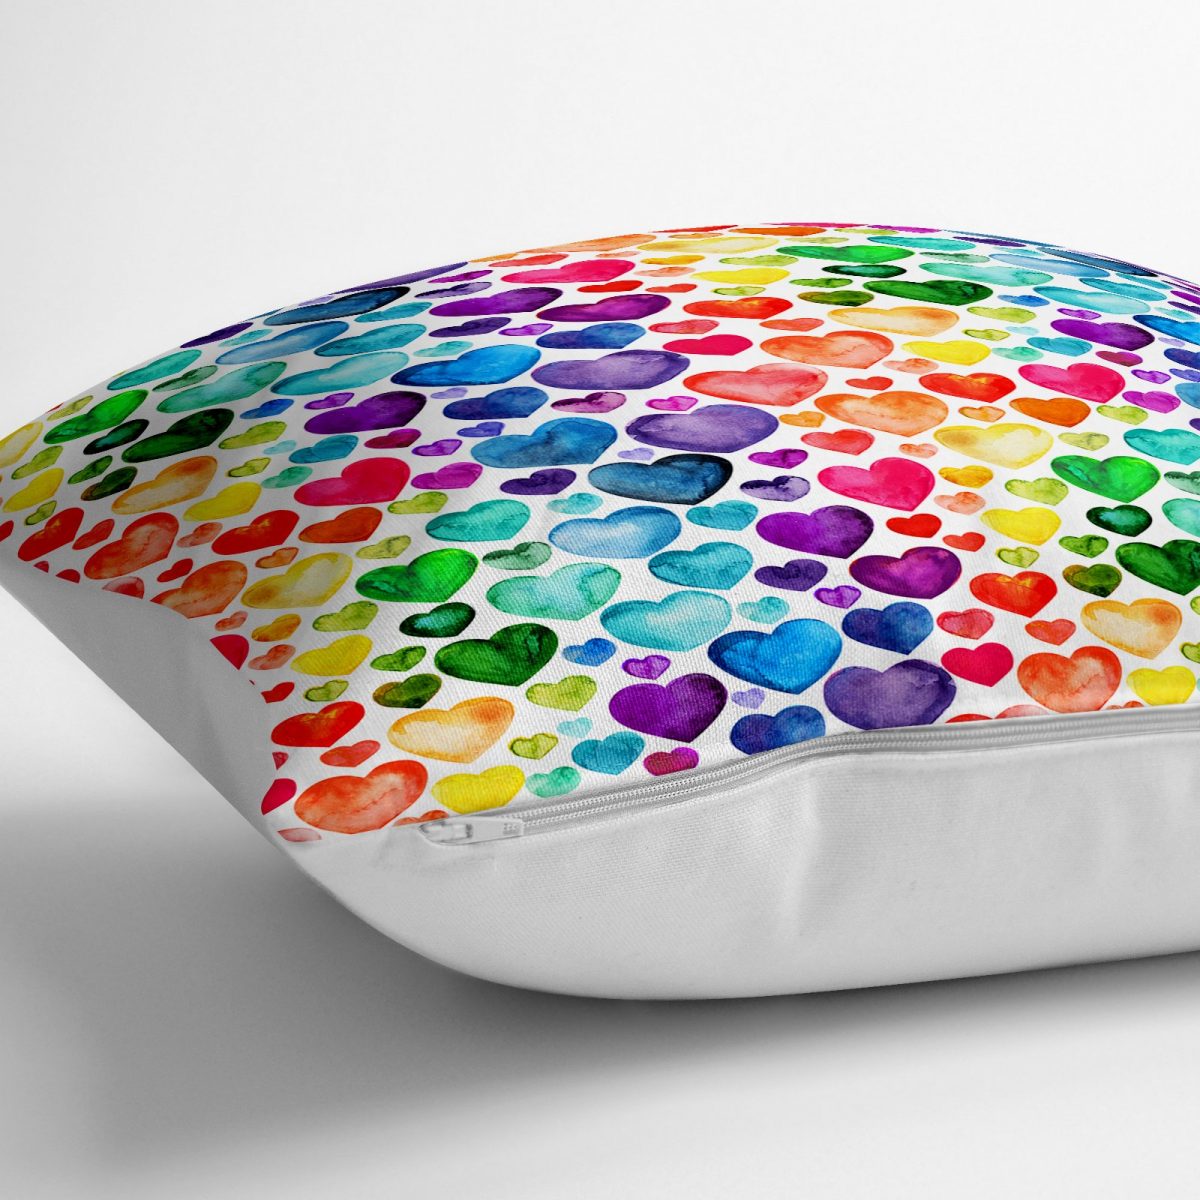 Renkli Kalpler Özel Tasarım Dijital Baskılı Dekoratif Yer Minderi - 70 x 70 cm Realhomes